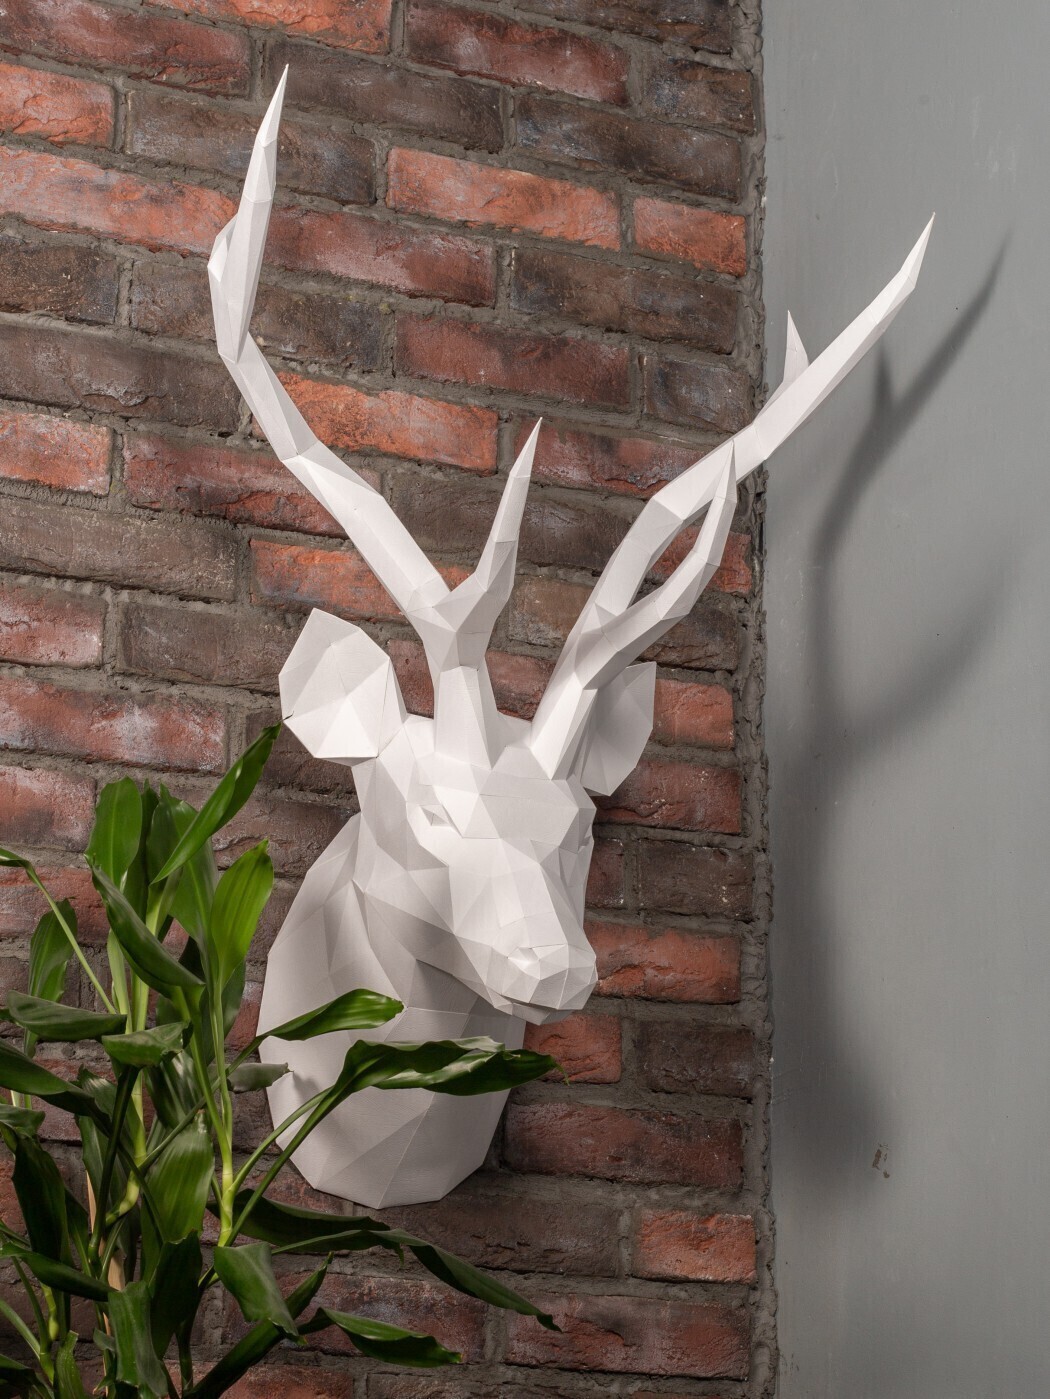 Оригами голова оленя на стену (40 фото) » идеи в изображениях смотреть онлайн и скачать бесплатно